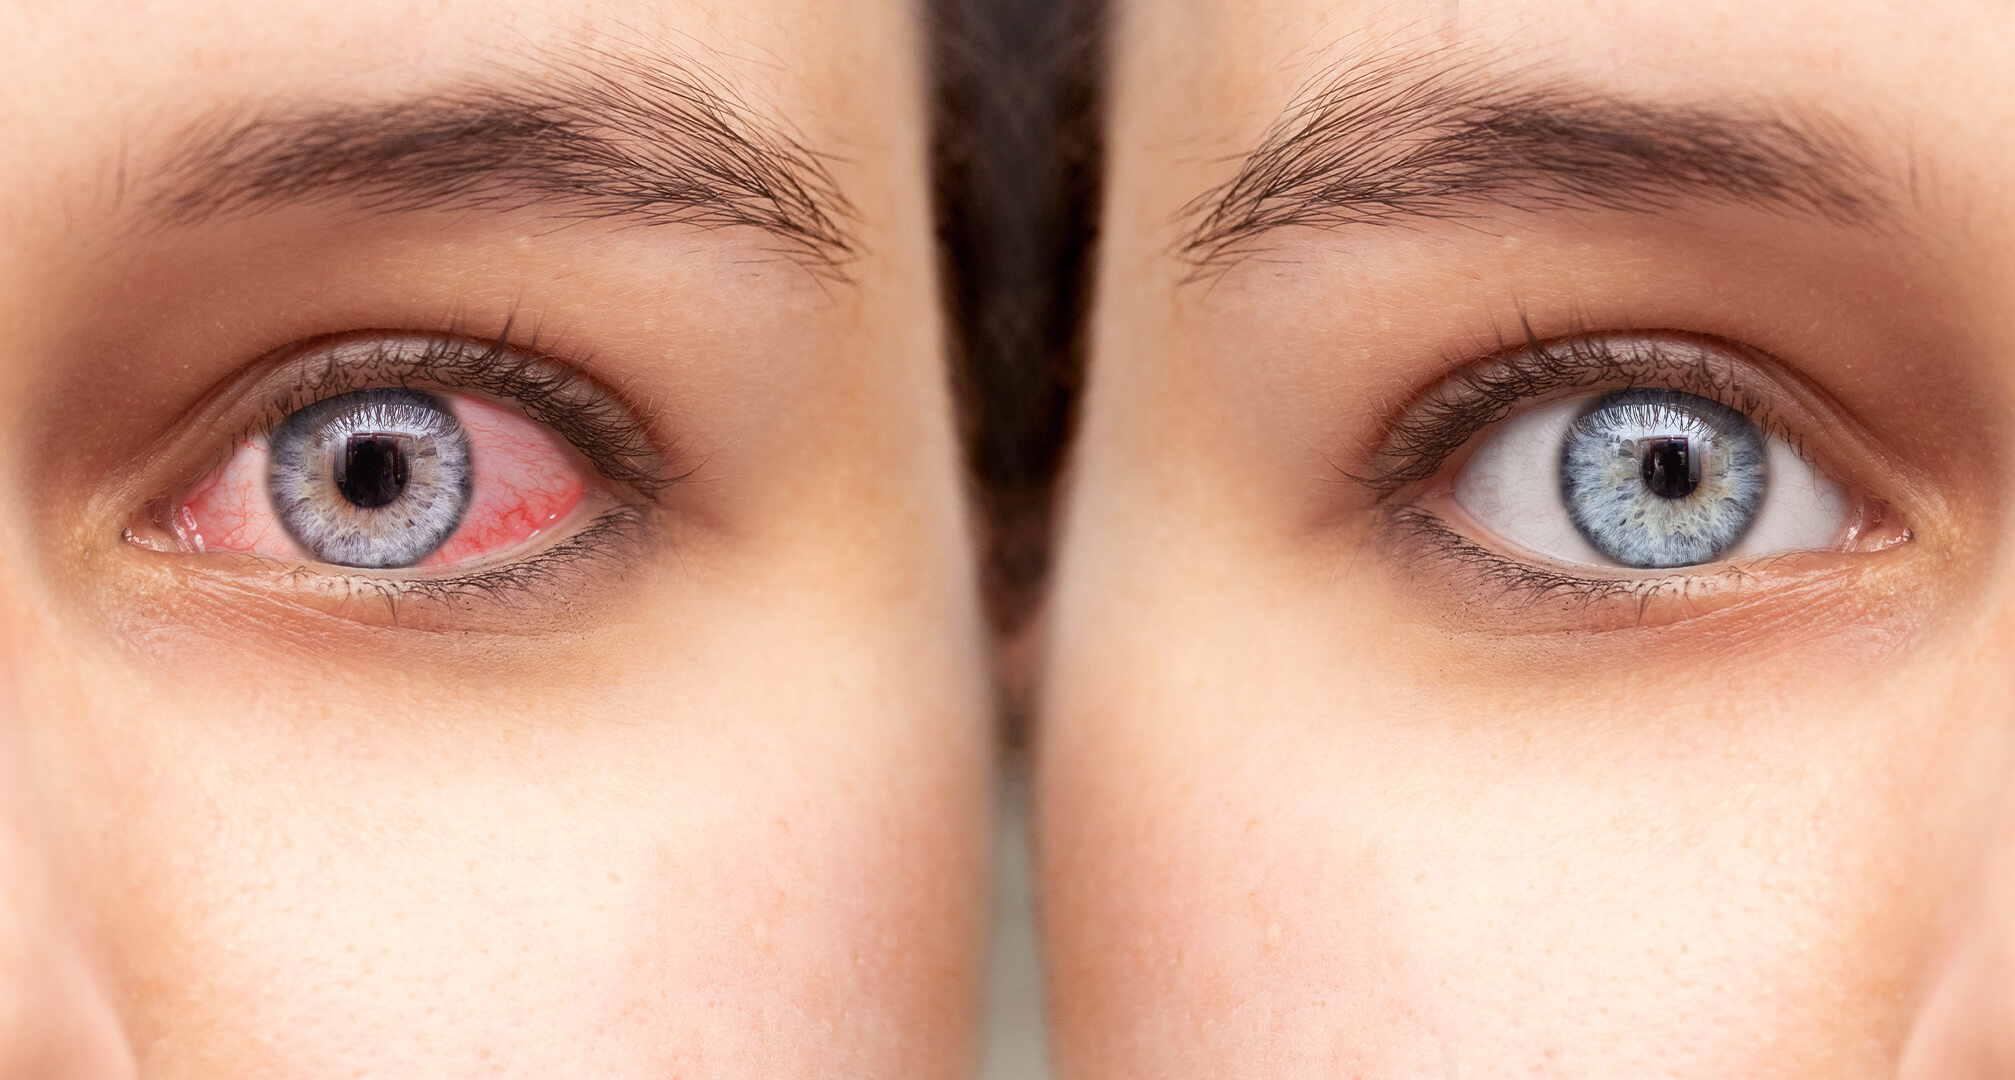 närbild av två ögon sida vid sida, ett rött torrt öga till vänster och ett friskt öga till höger